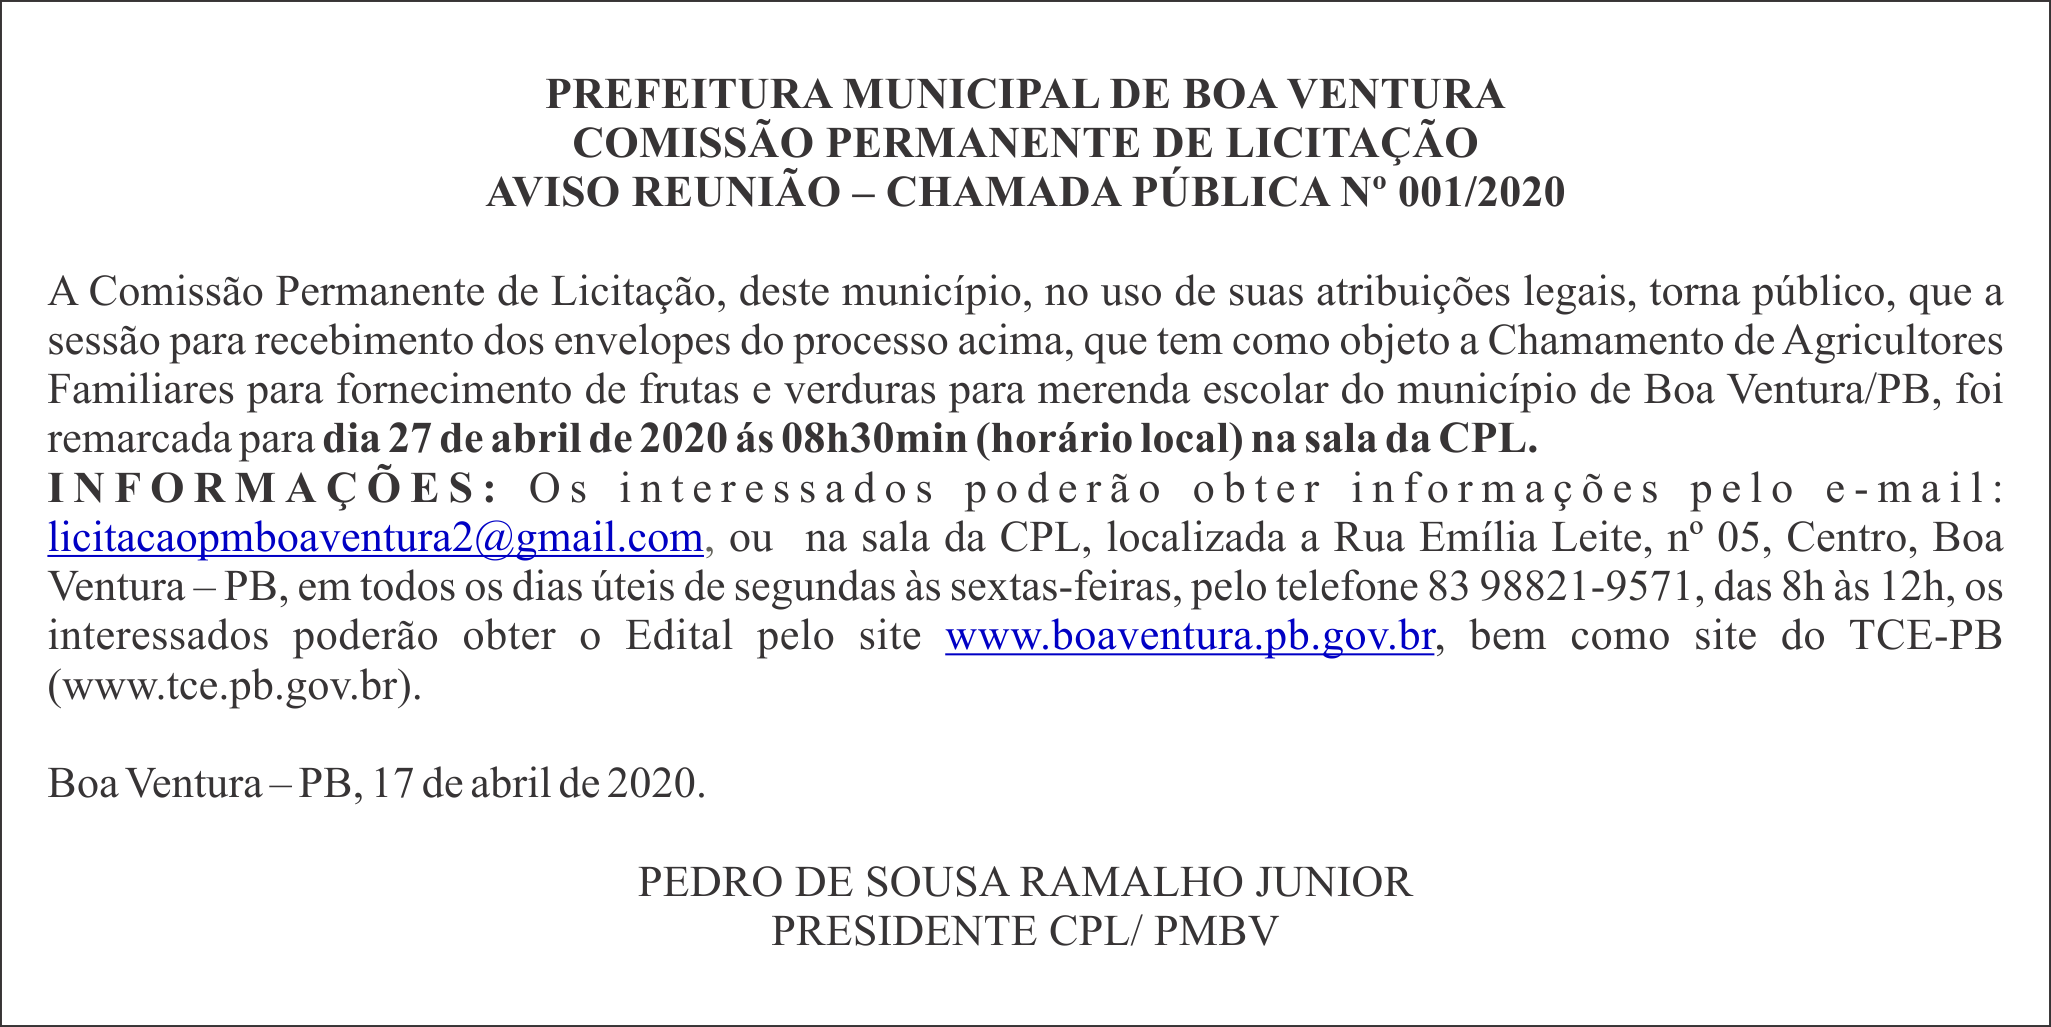 PREFEITURA MUNICIPAL DE BOA VENTURA – AVISO REUNIÃO – CHAMADA PÚBLICA Nº 001/2020